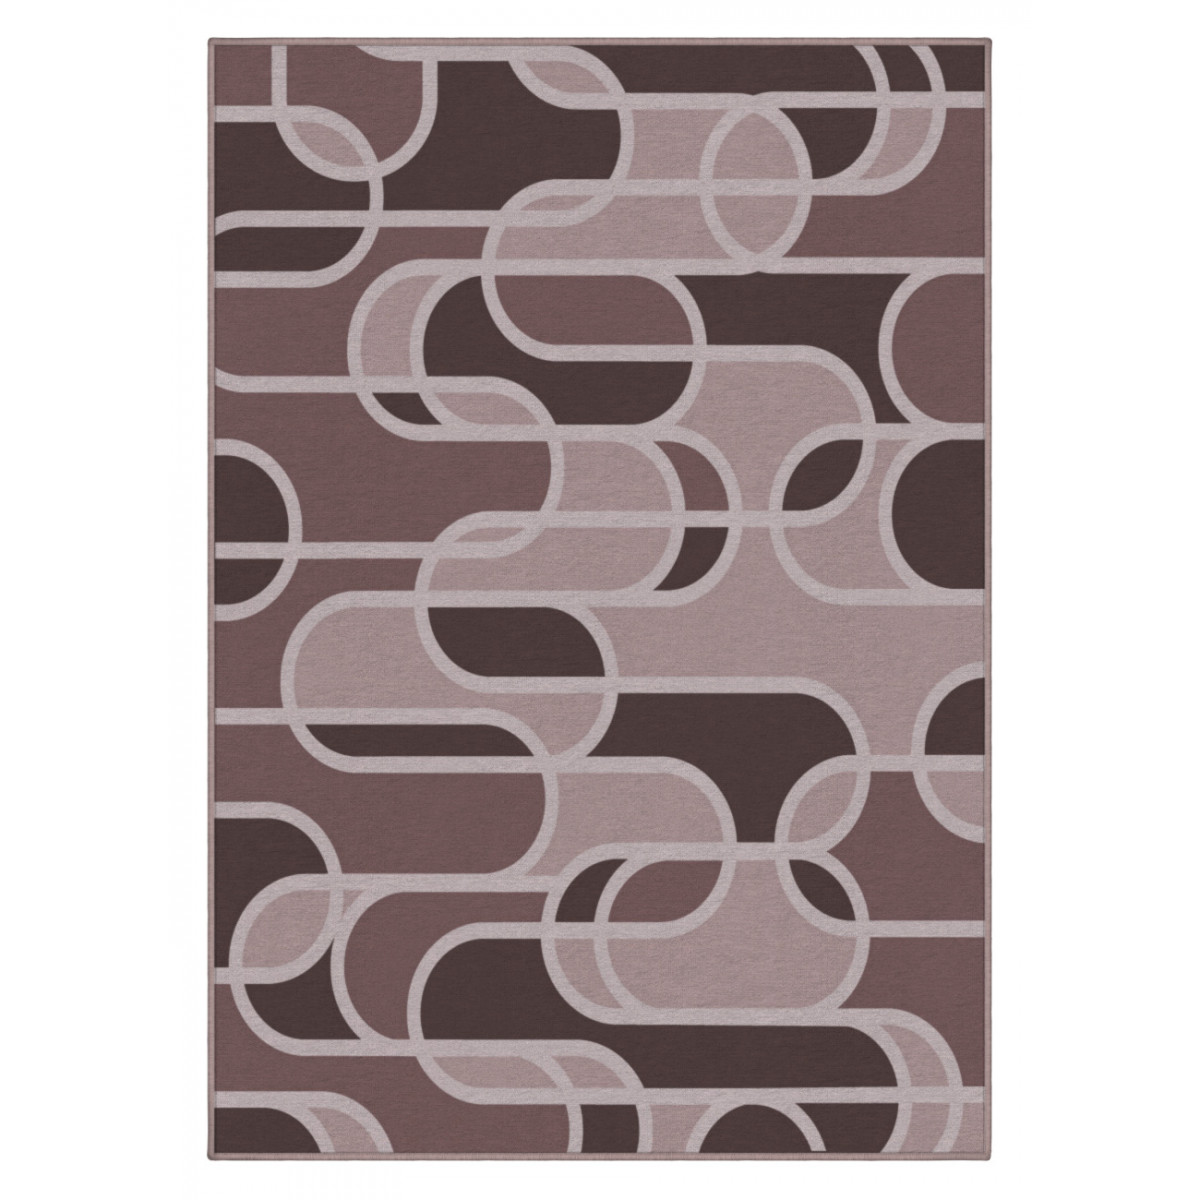 Dizajnový kusový koberec Grate od Jindřicha Lípy